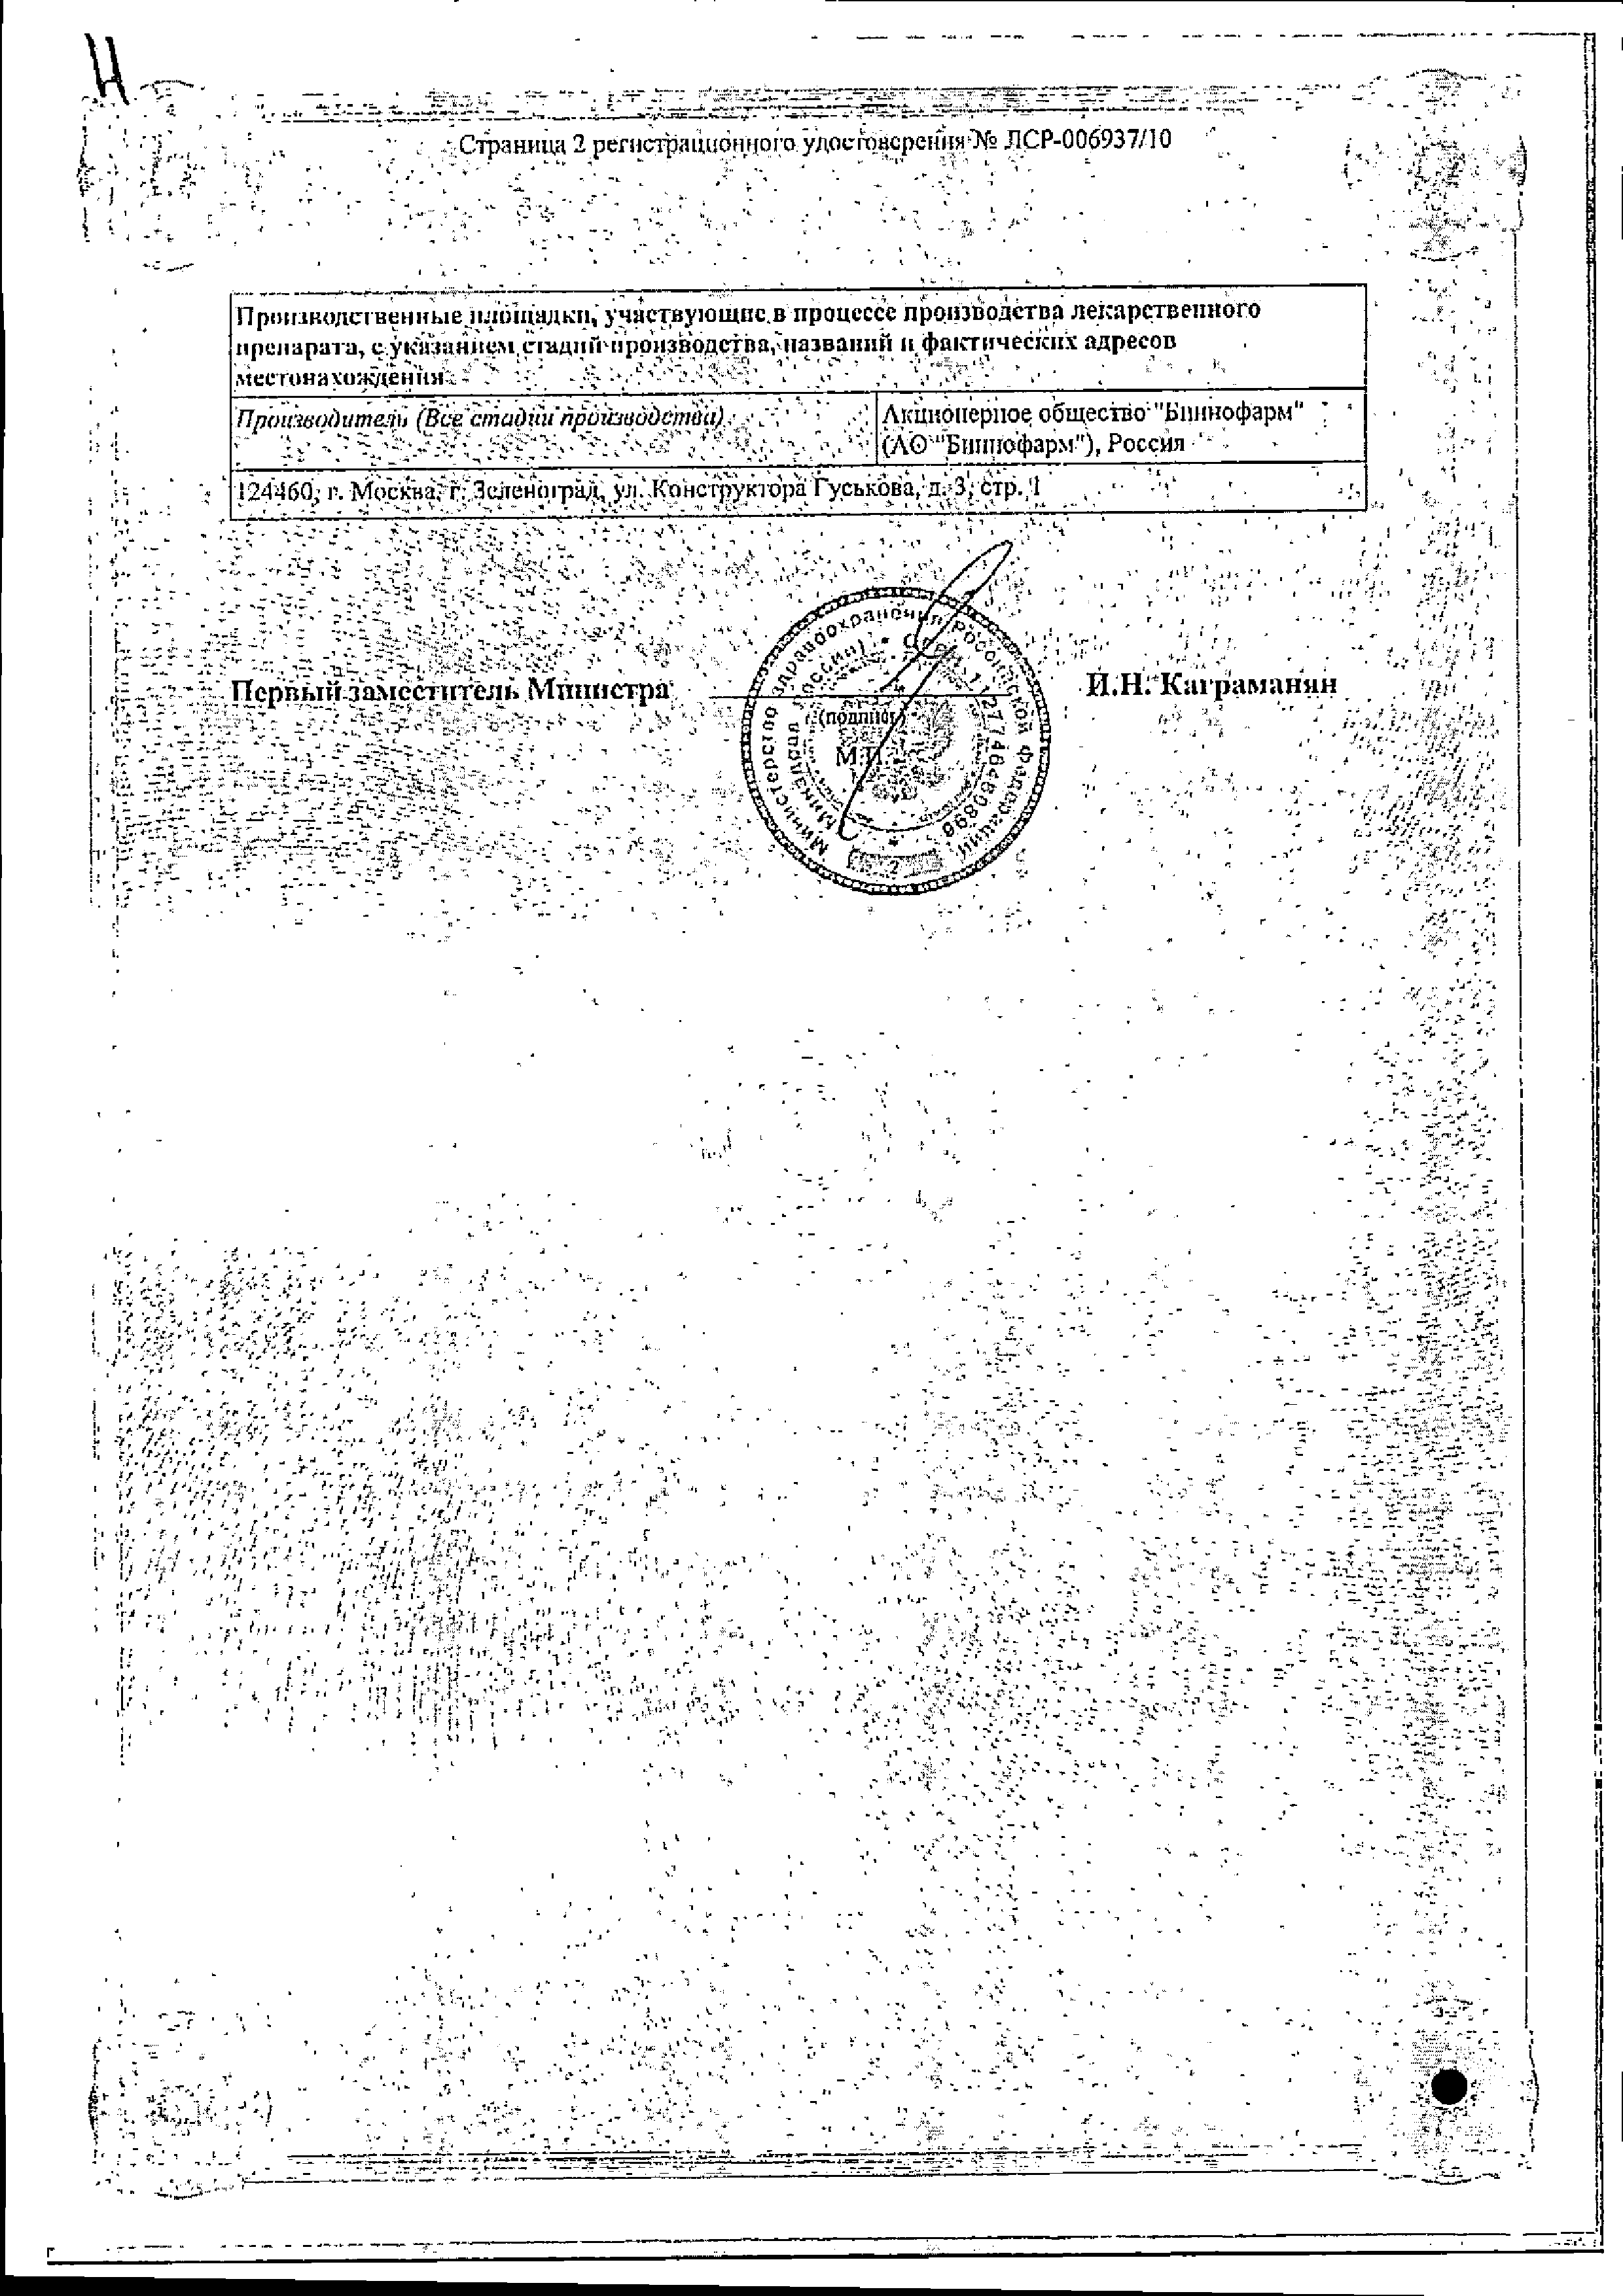 Сальбутамол сертификат